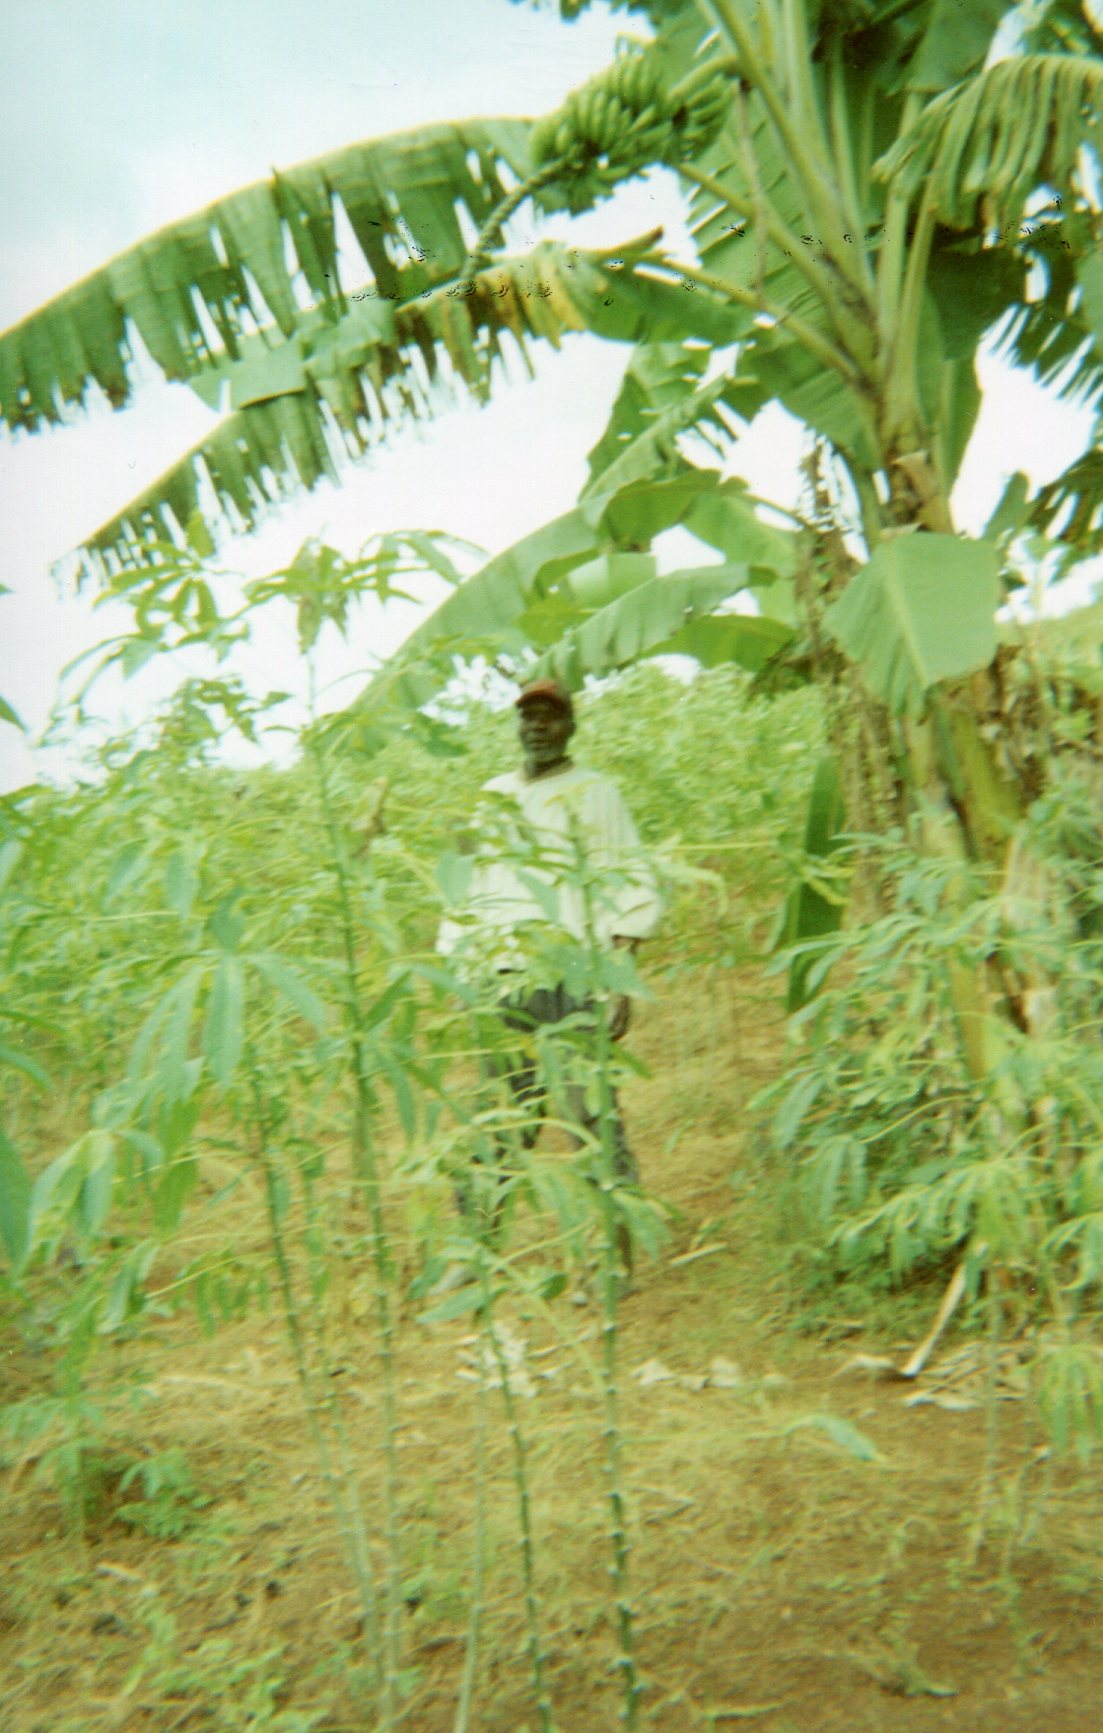  Green banana tree: Hope in life. 